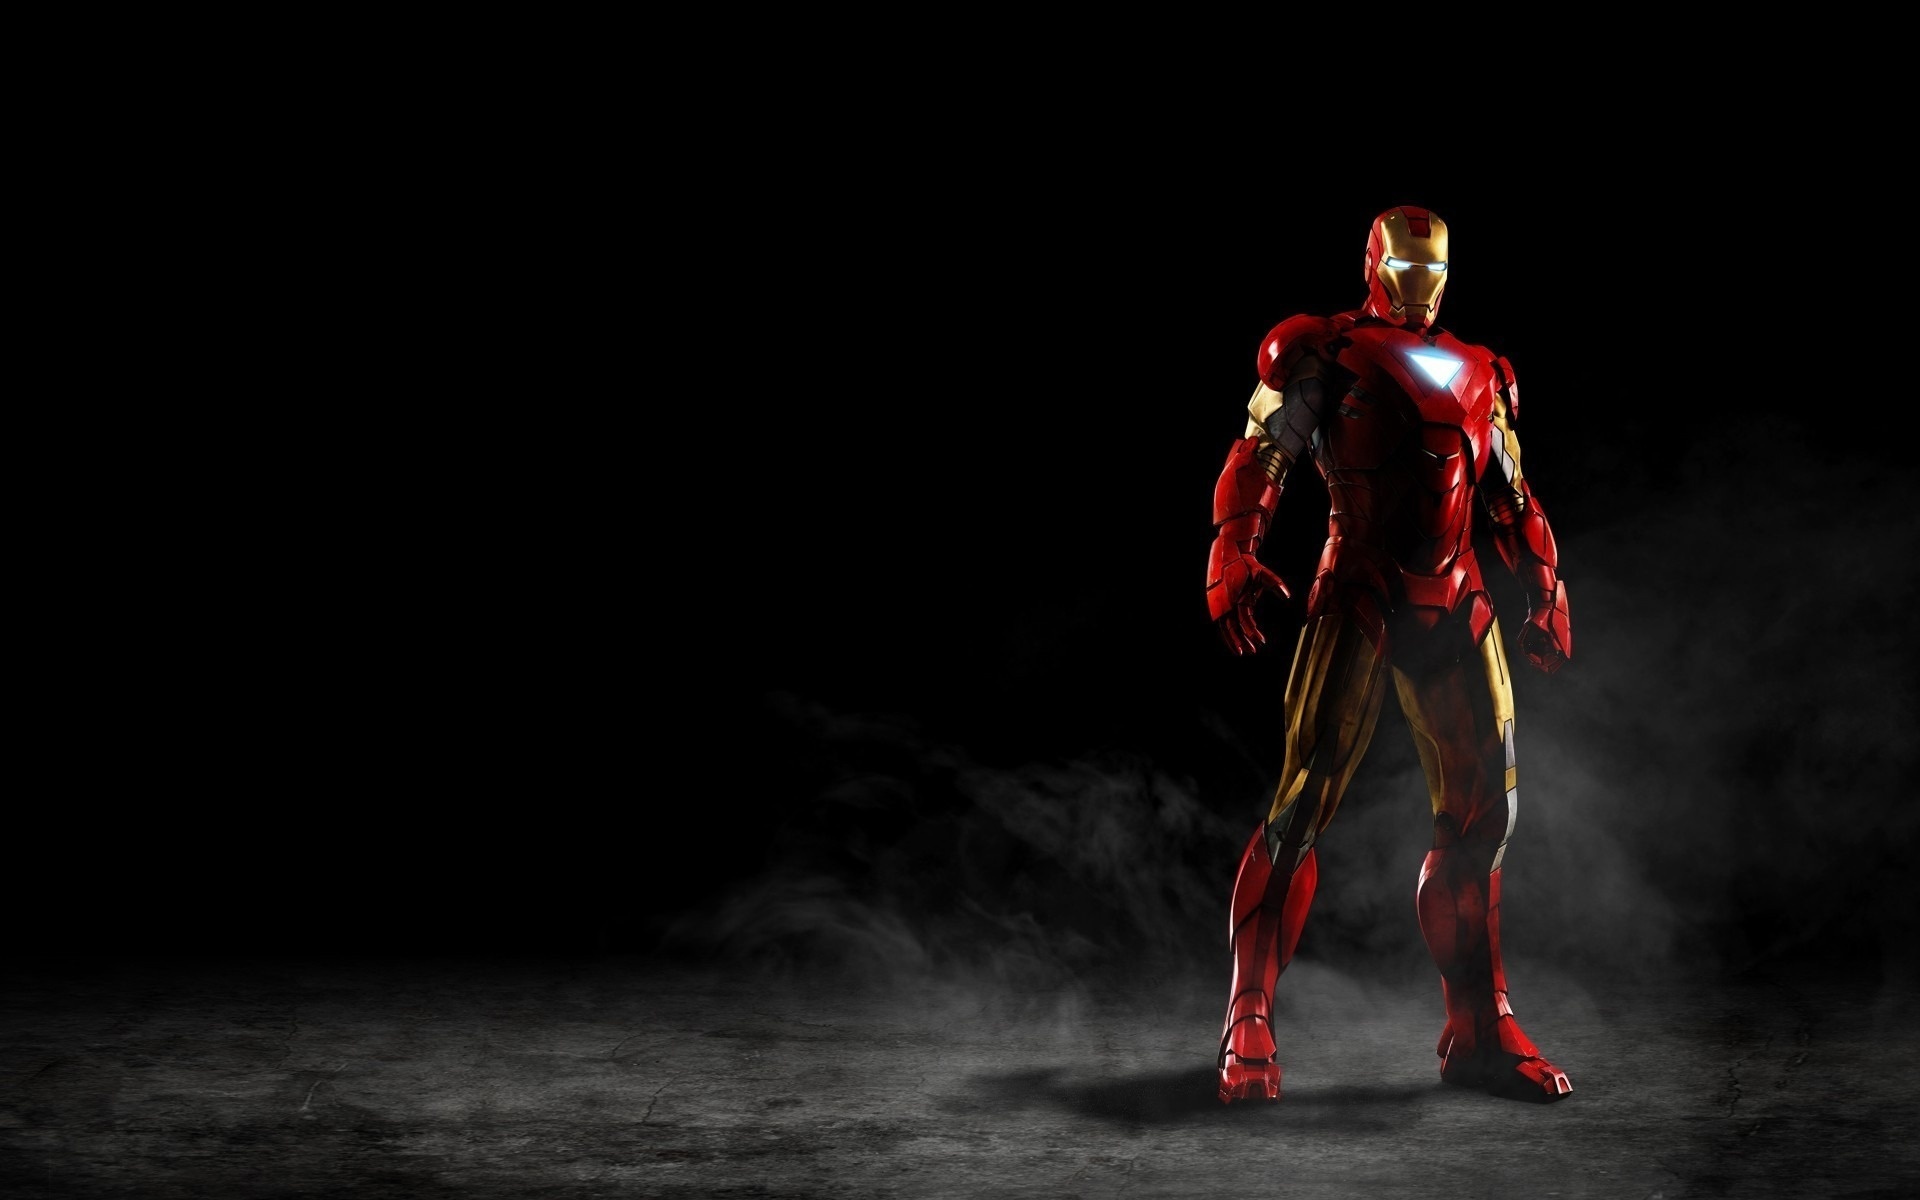 Iron Man, Powerful suit, Movie hero, Fanpop wallpaper, 1920x1200 HD Desktop